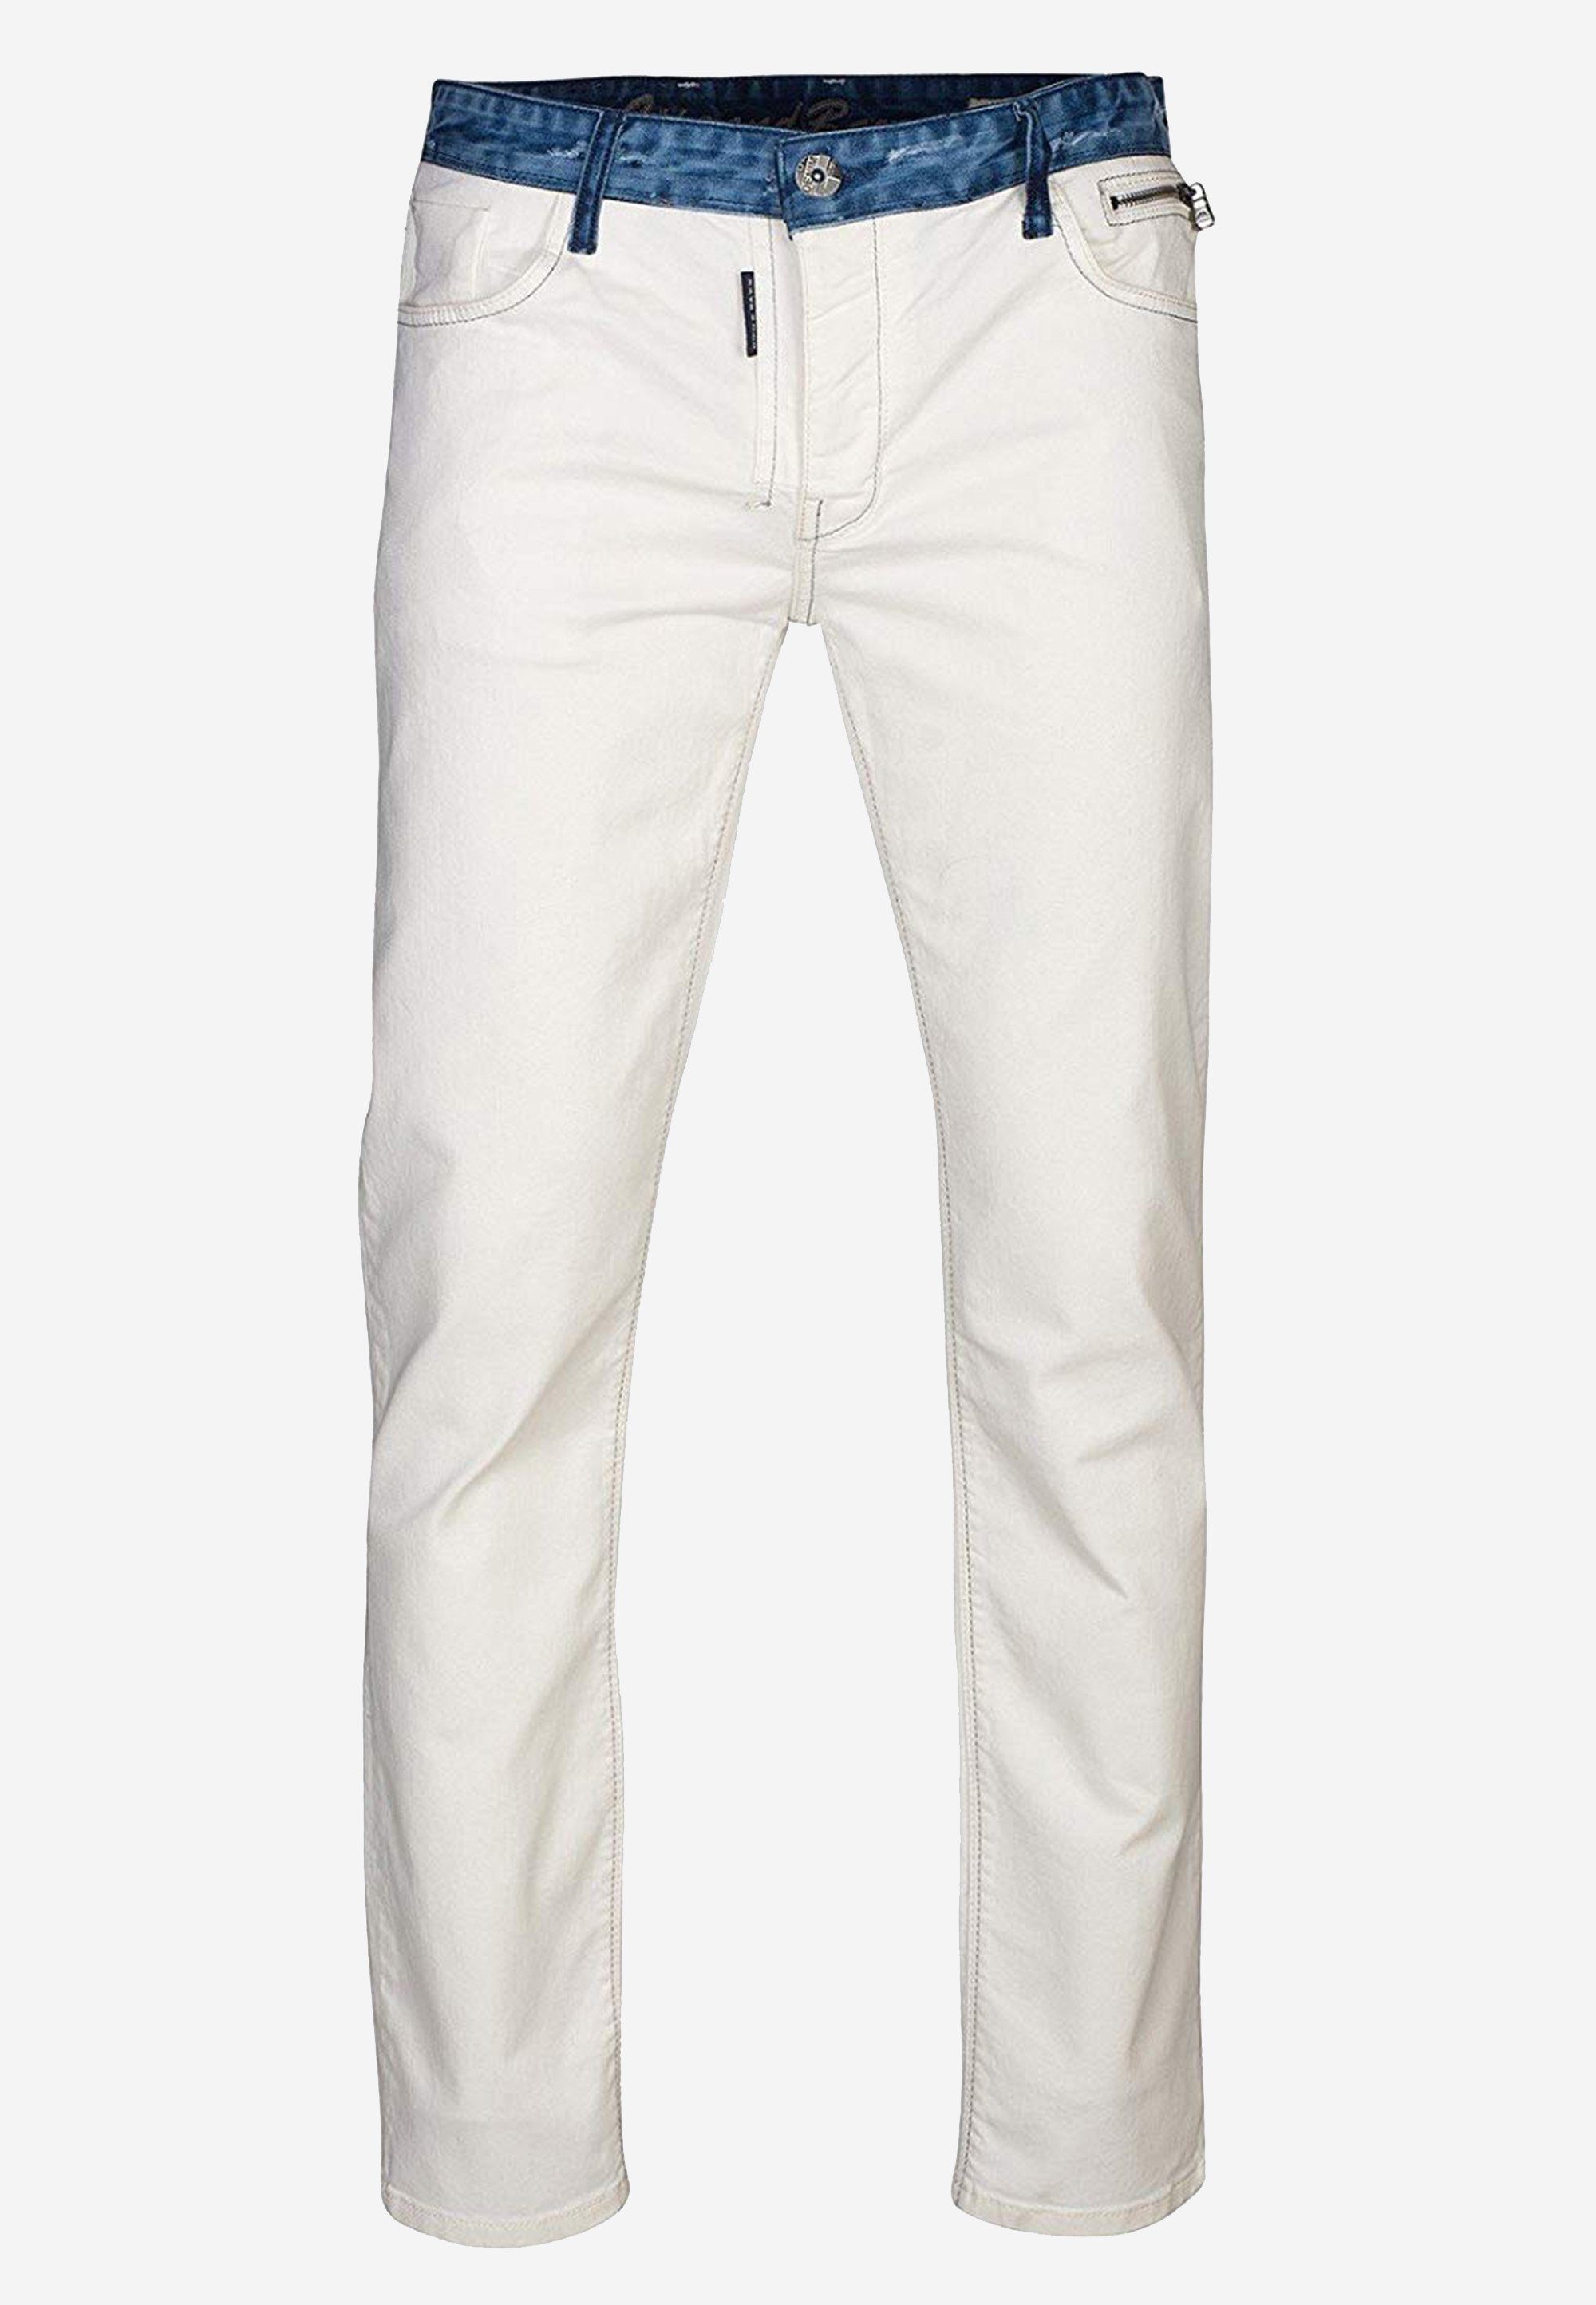 Cipo & Baxx Bequeme Jeans mit farblich abgehobenem Hosenbund